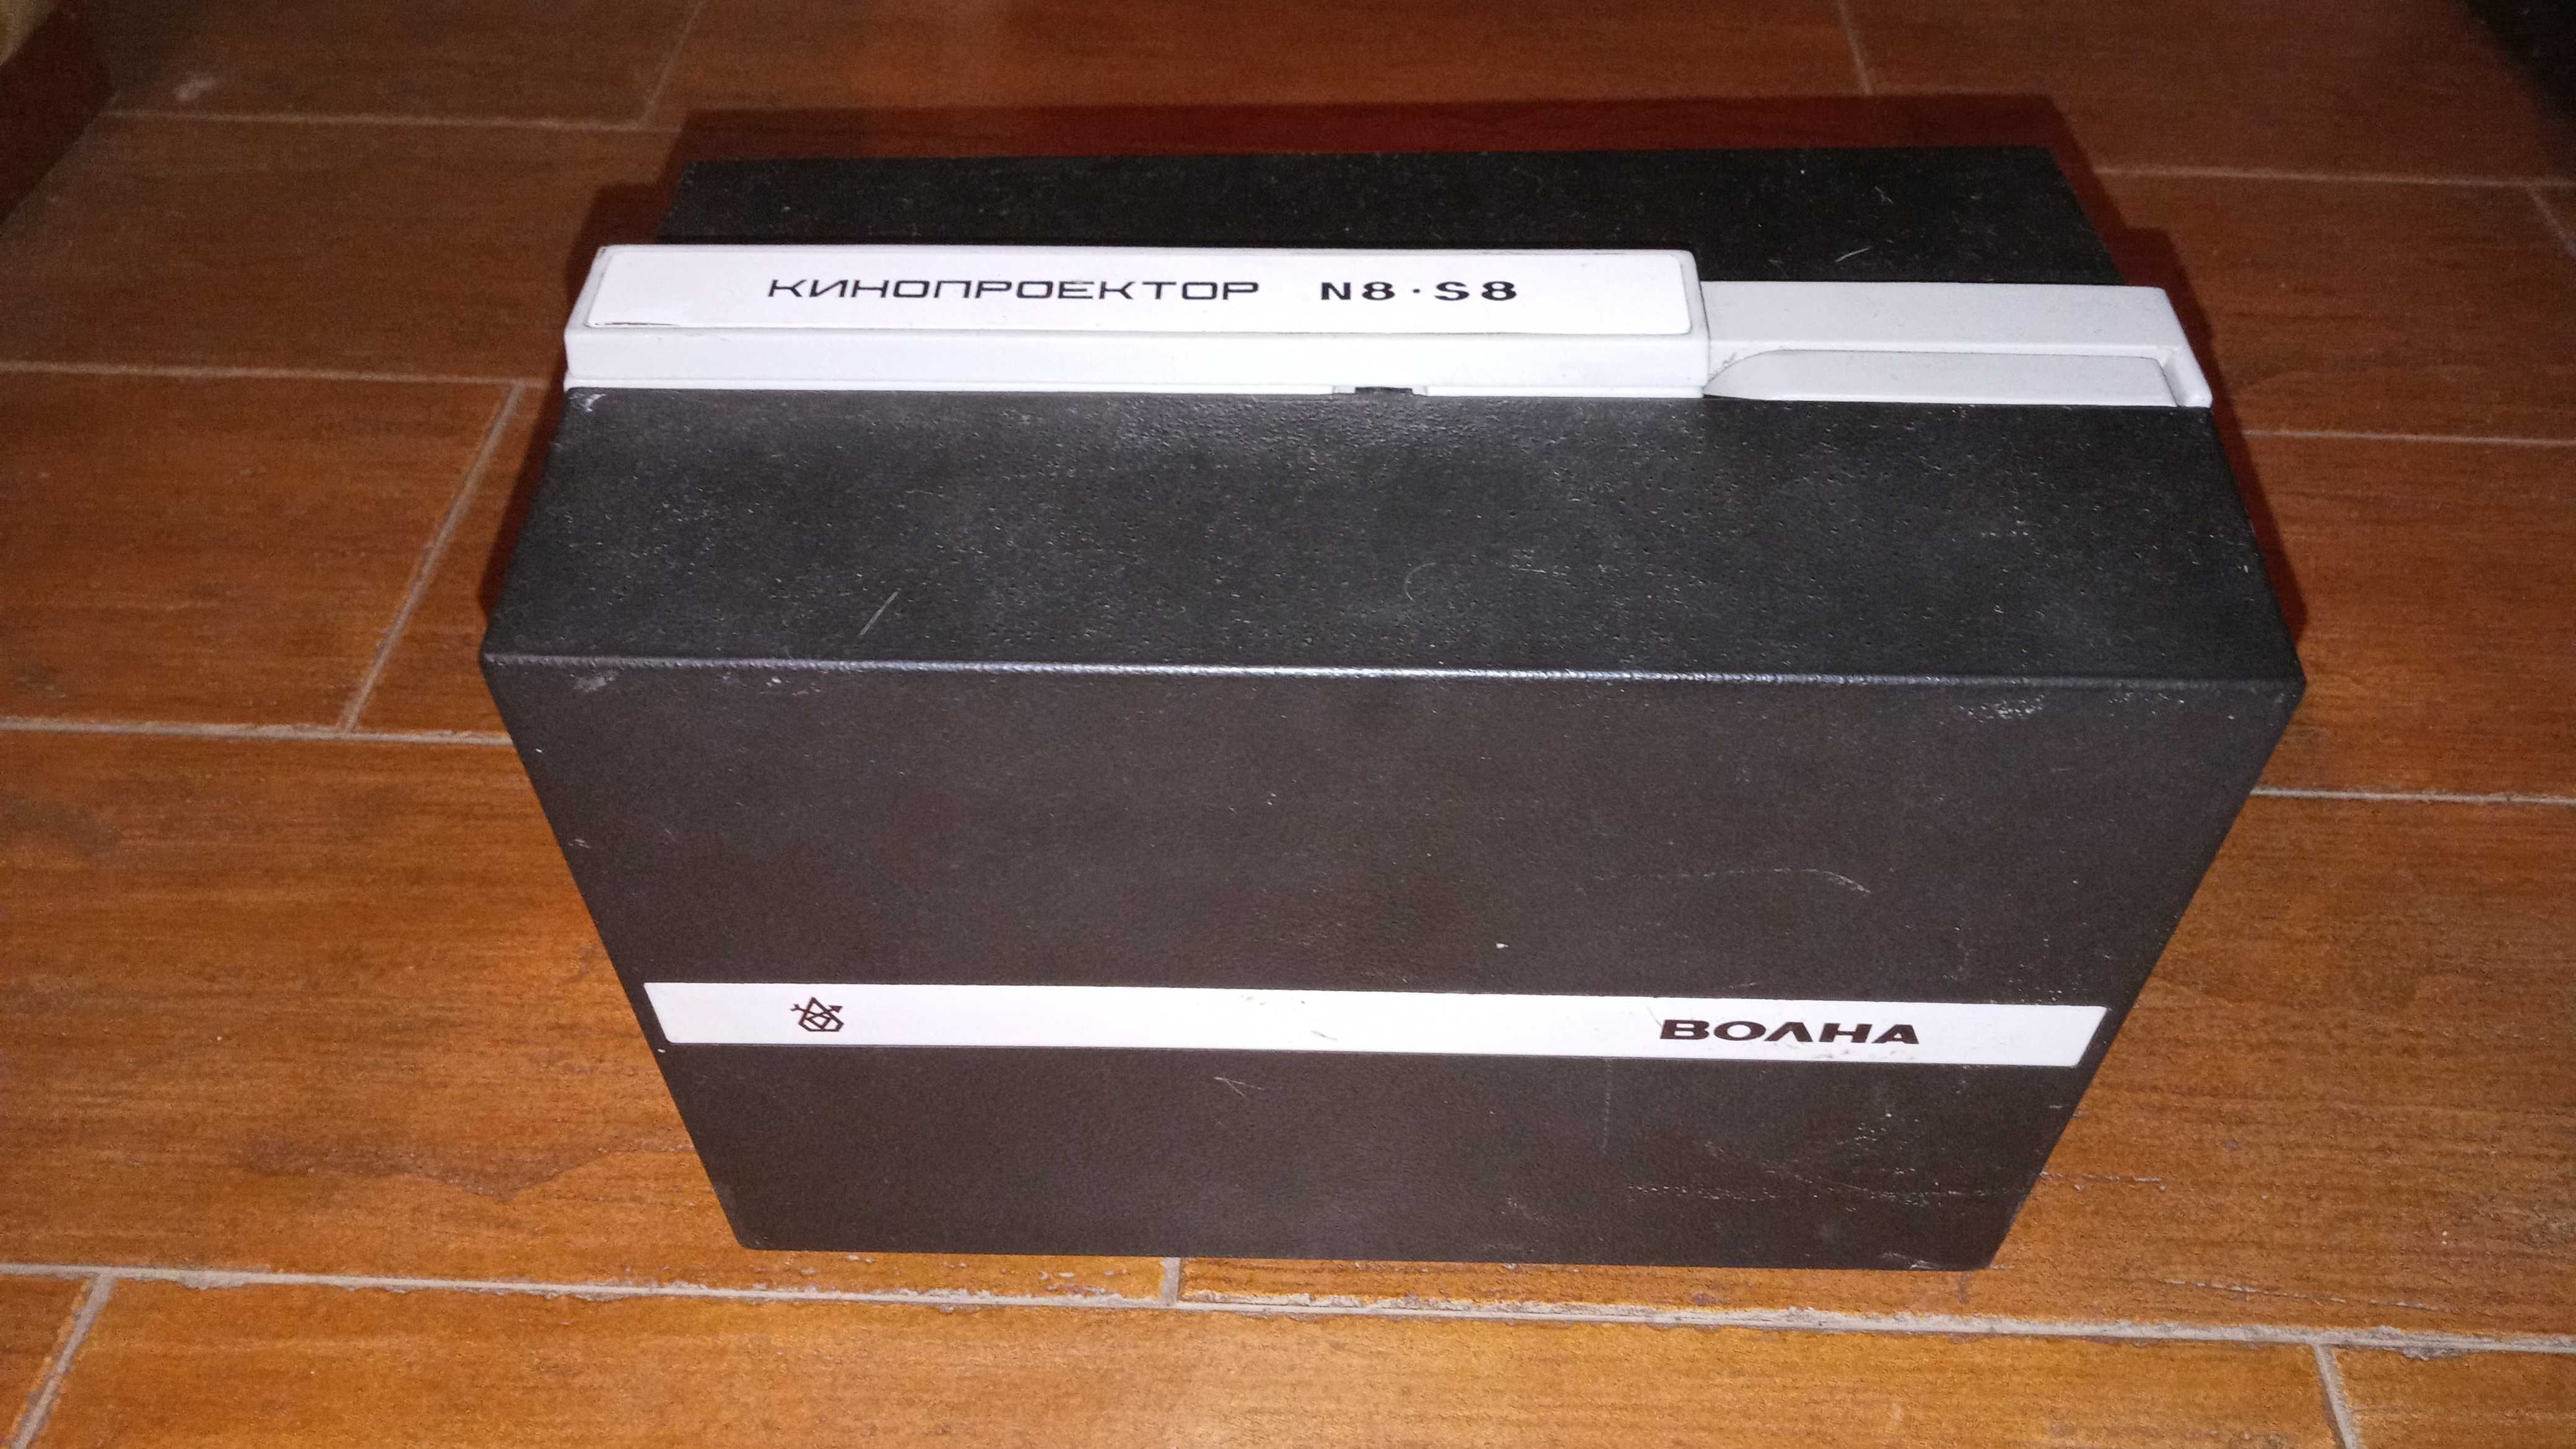 Projector de cinema de bobines N8 - S8 russo - anos 60/70 - muito raro